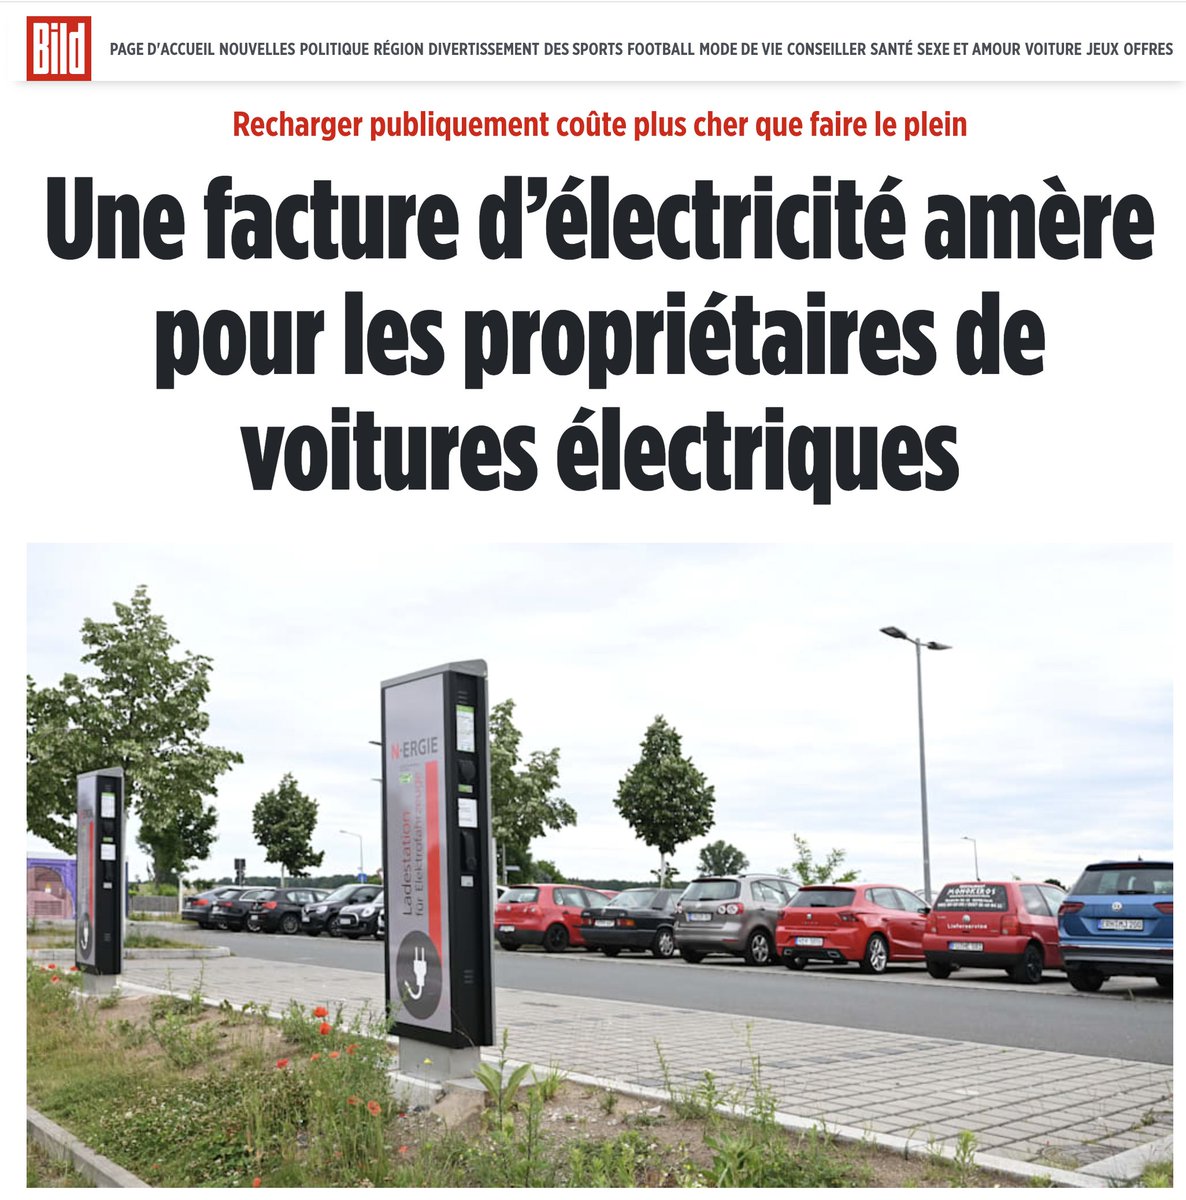 En Allemagne, déjà l'électrique coûte plus cher... Bientôt en France aussi.